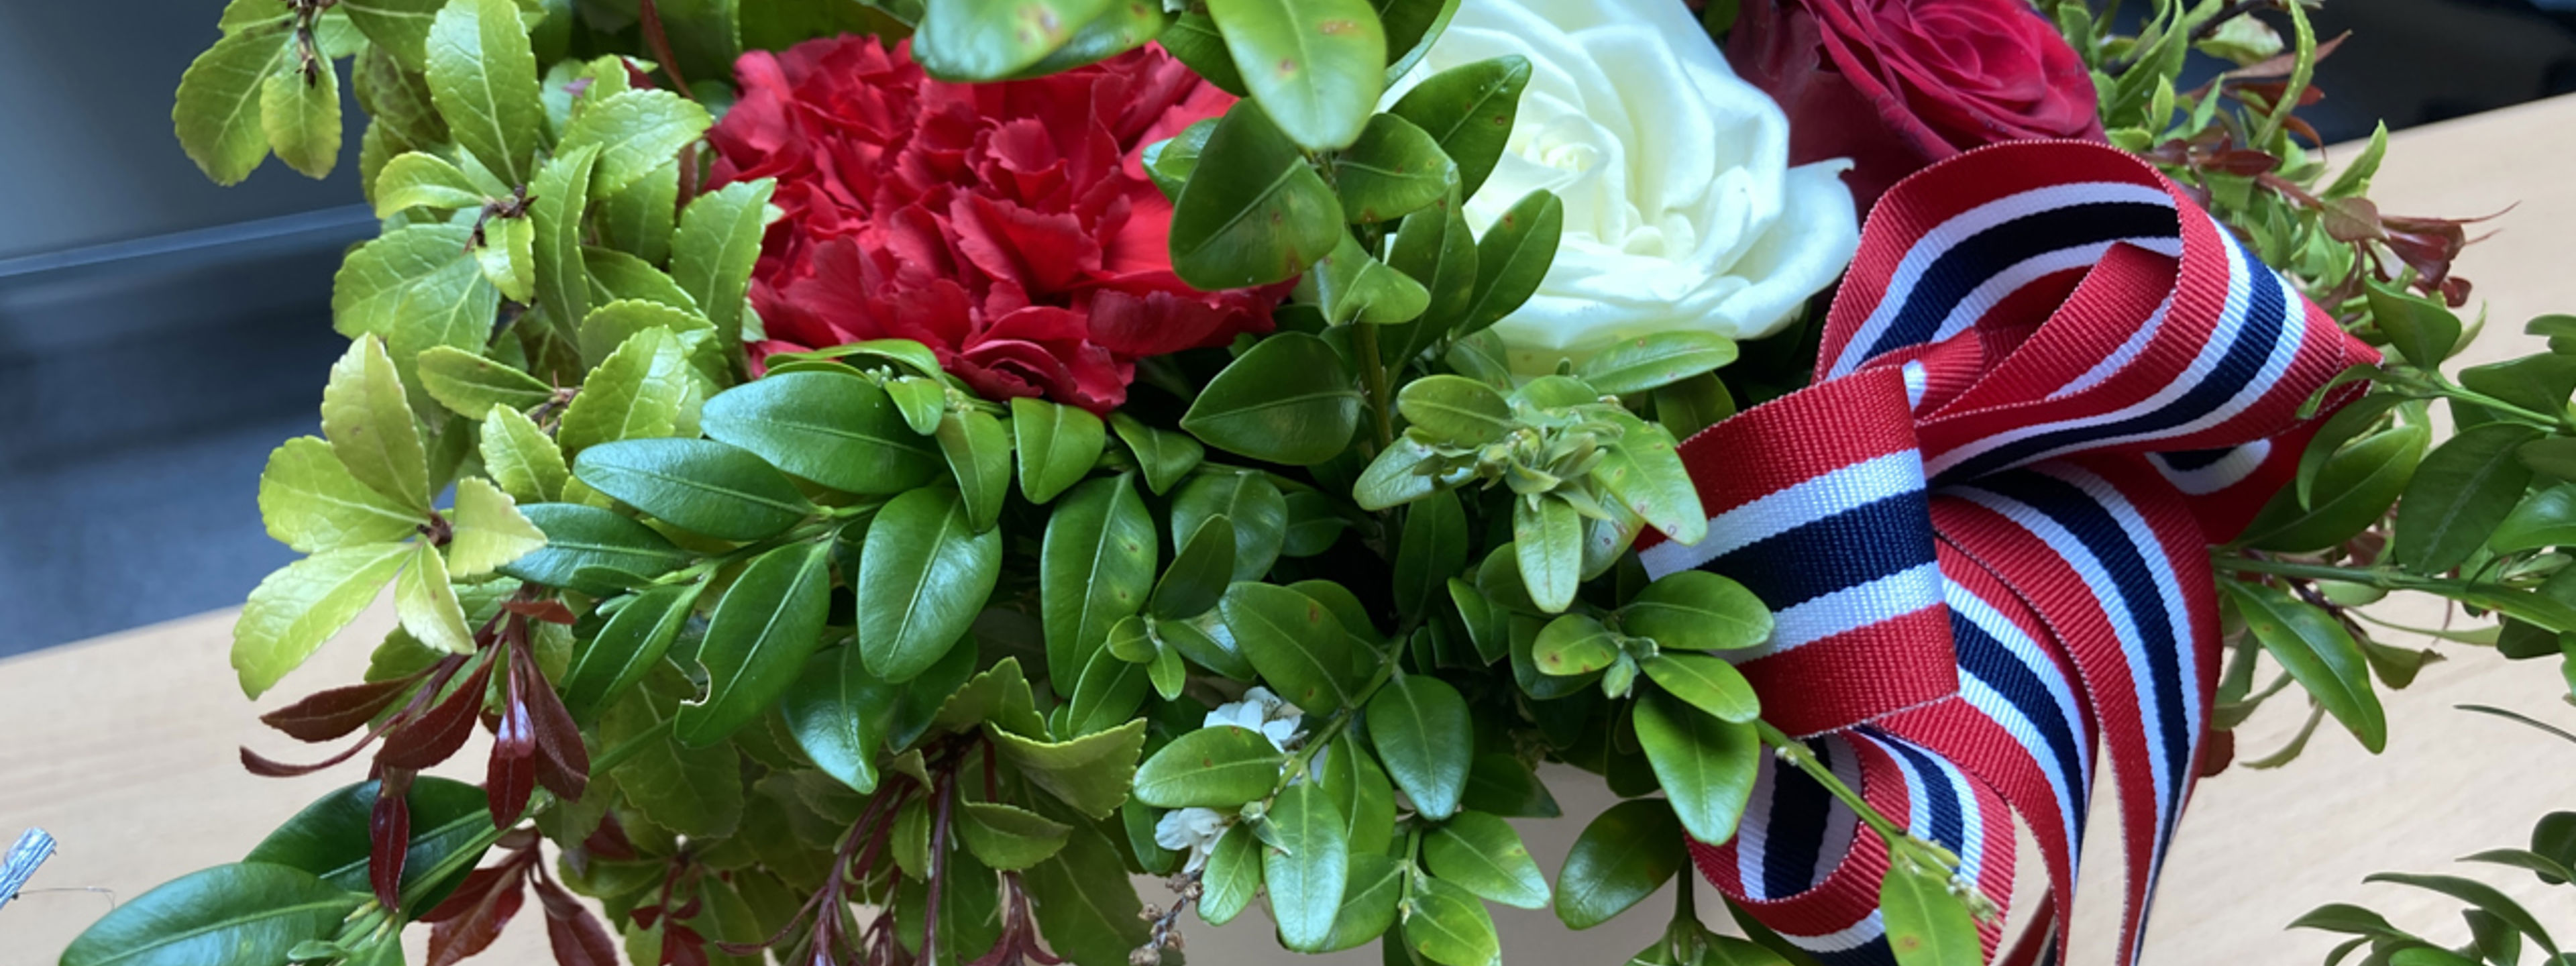 Bomsterdekorasjon med kvit rose, raud rose, band i dei norske fargane og ein del grønt.